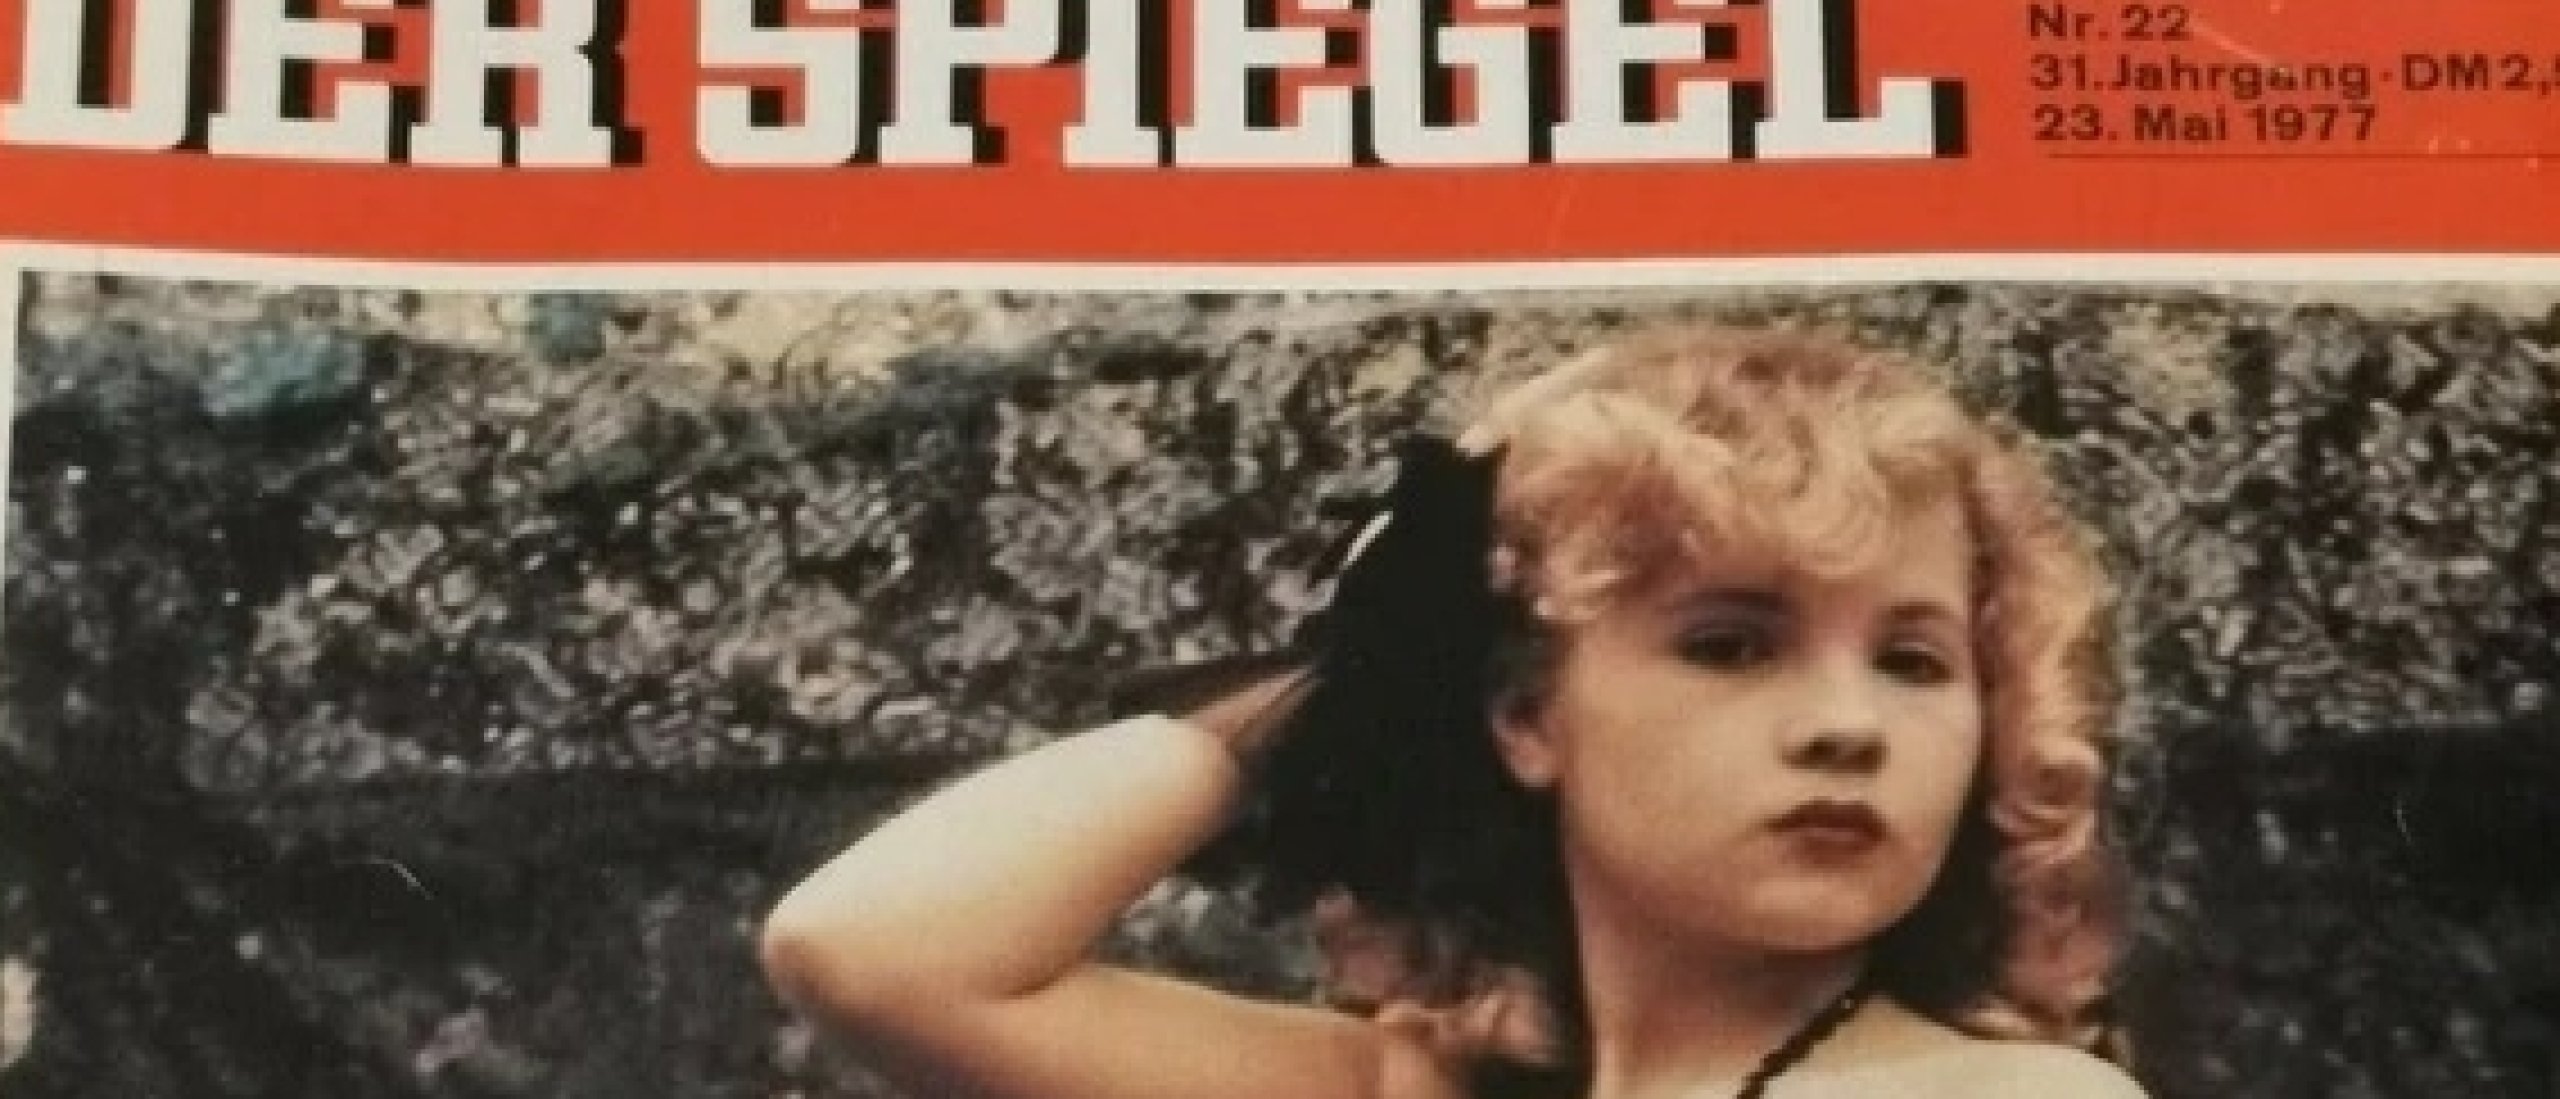 Der Spiegel erotic cover